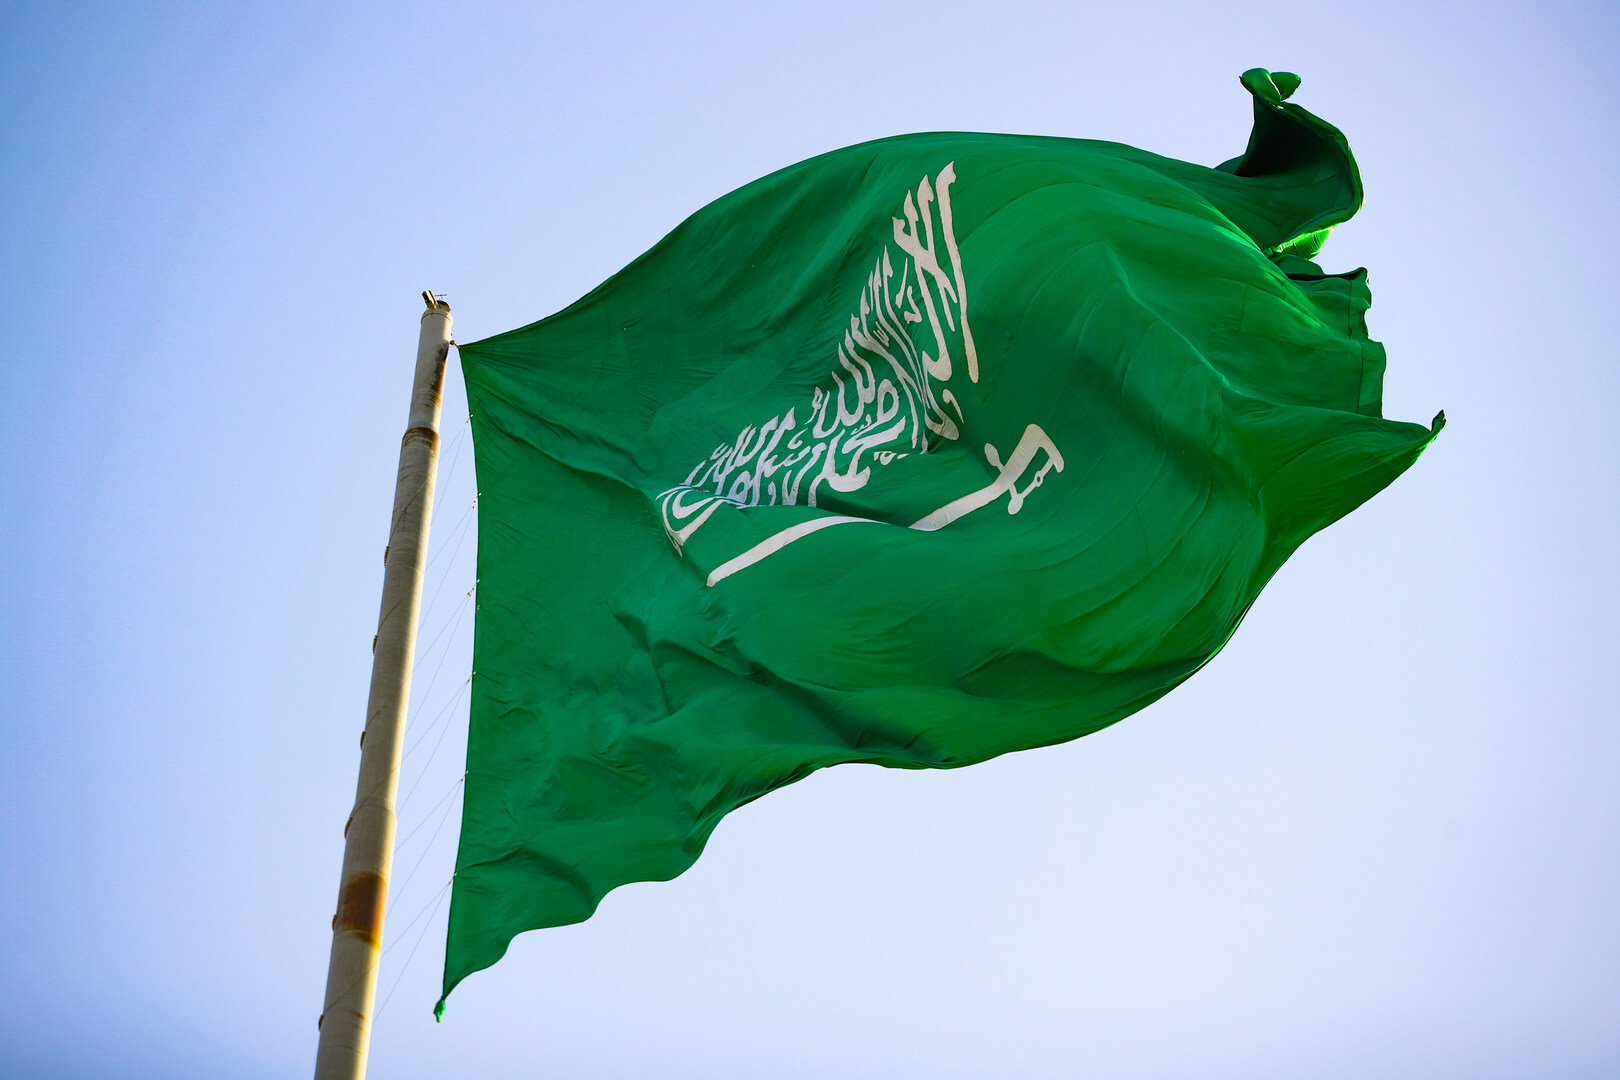 تقرير: الاقتصاد السعودي يحقق ناتجا تريليونيا لـ4 فصول متتالية لأول مرة